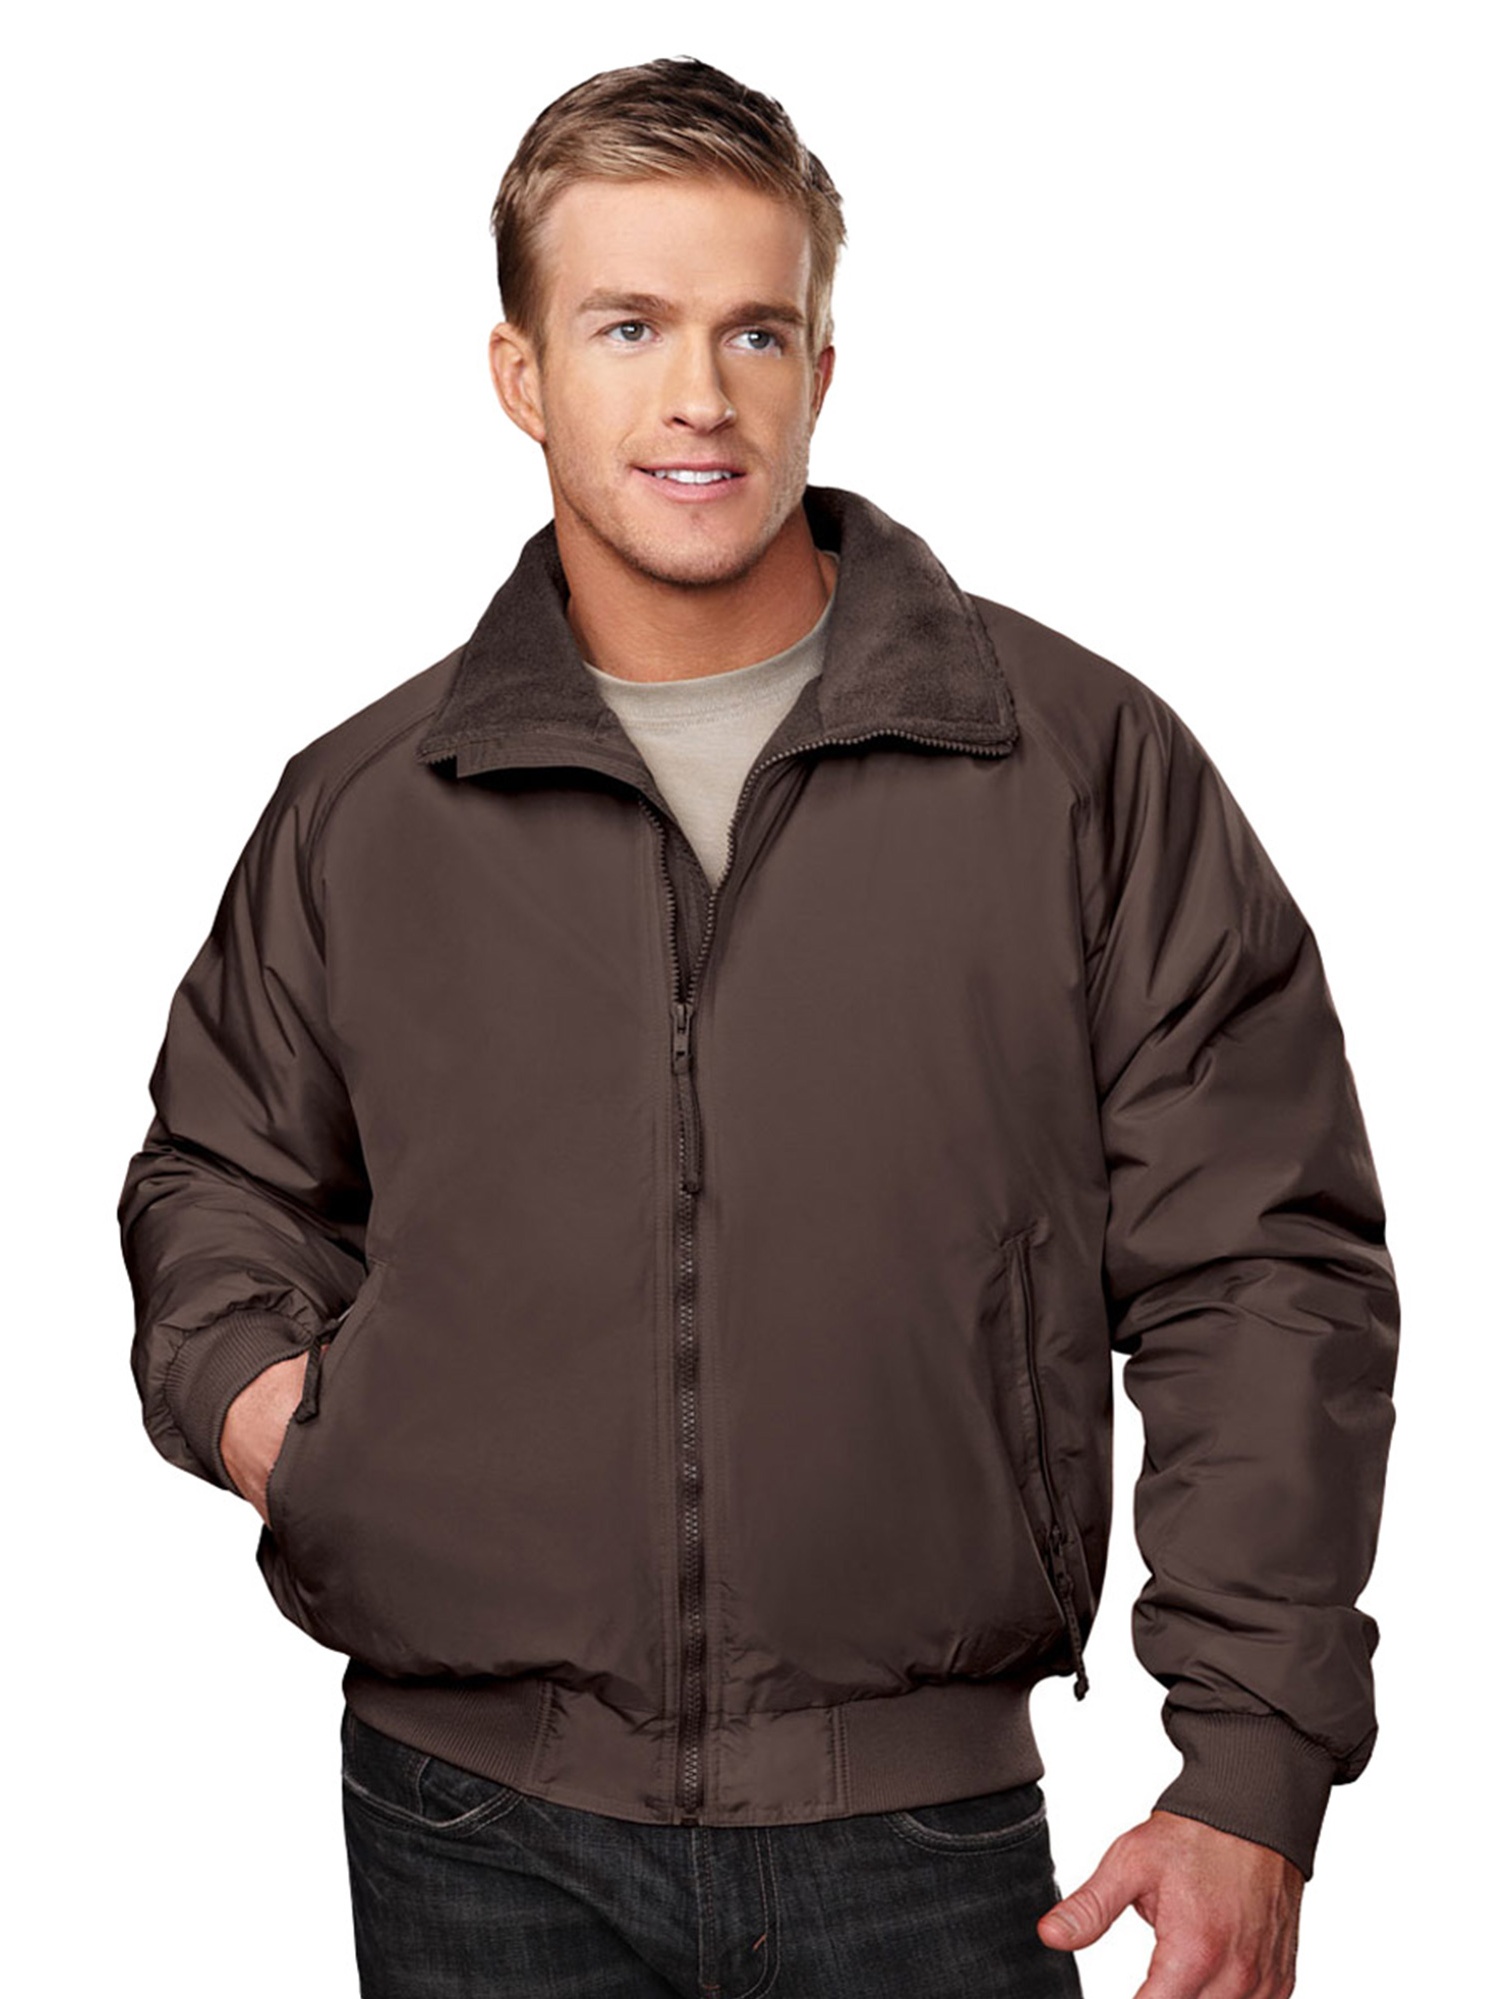 Tri-Mountain Mens Coats  Jackets - Walmart.com